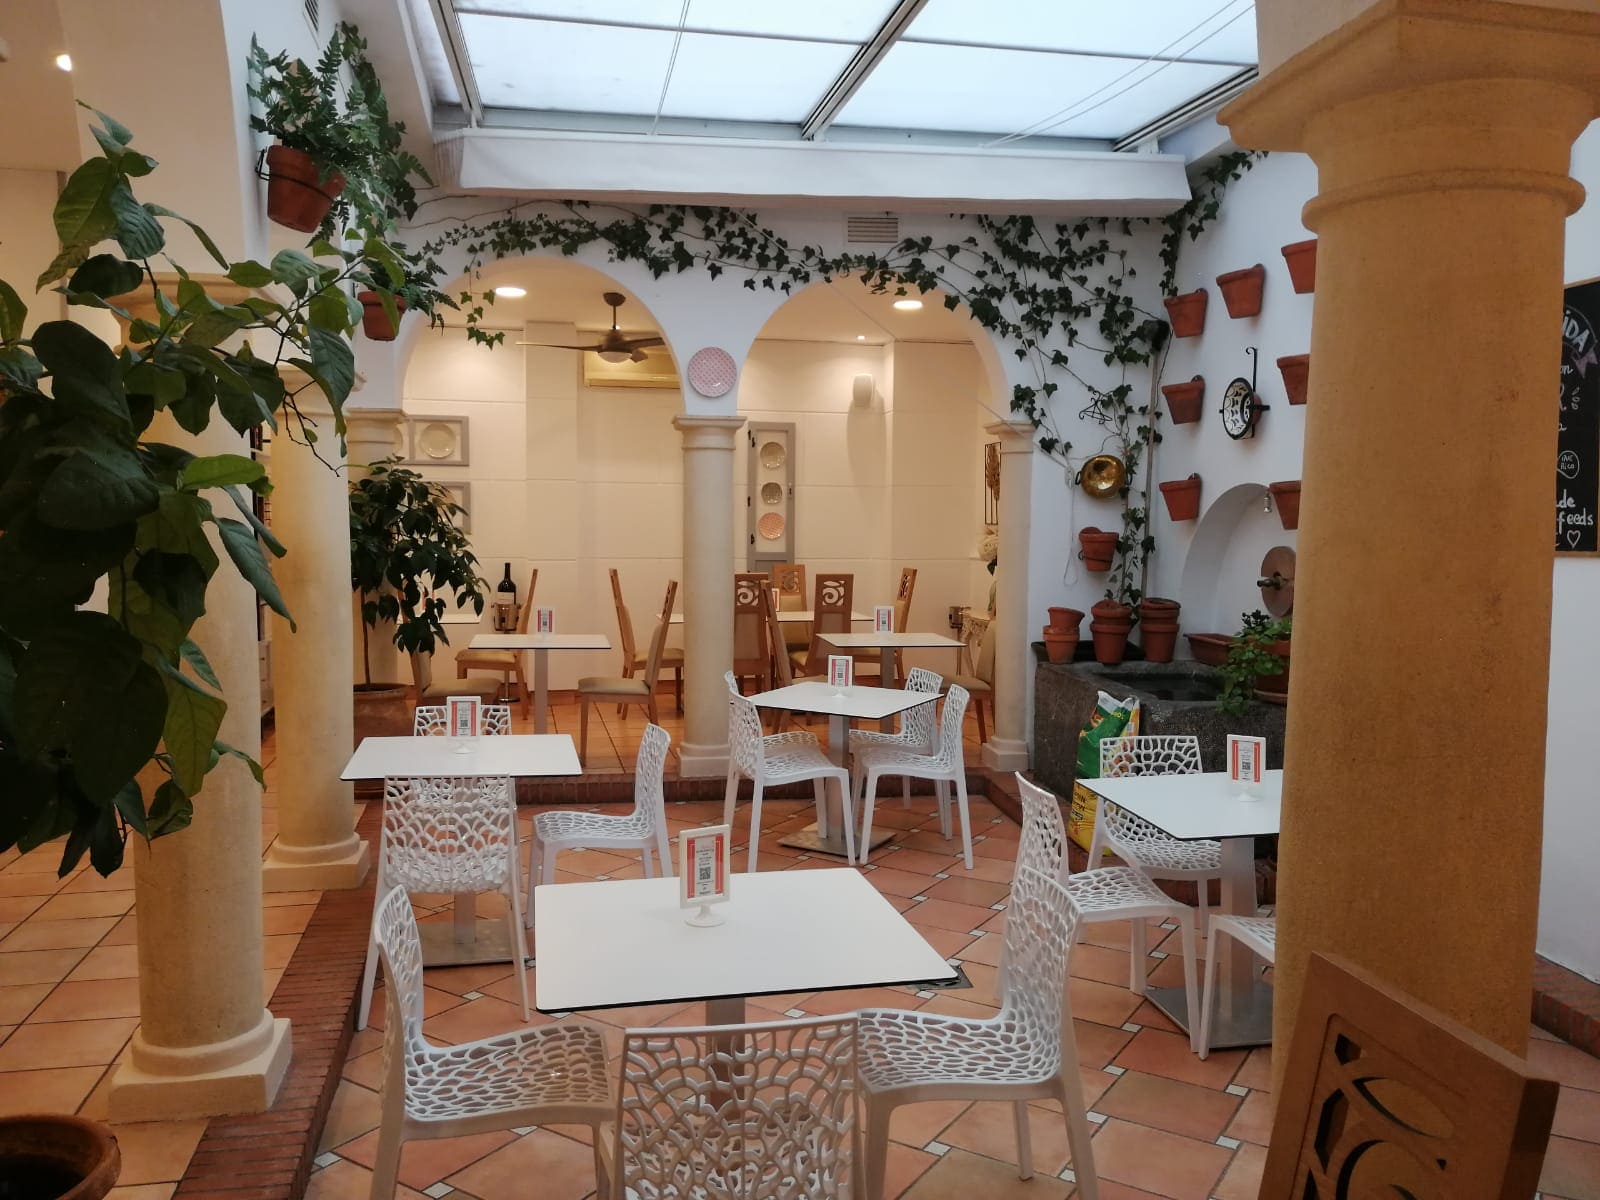 Restaurante de comida tradicional andaluza, situado en el centro del casco viejo de Córdoba, a escasos metros de la Mezquita             